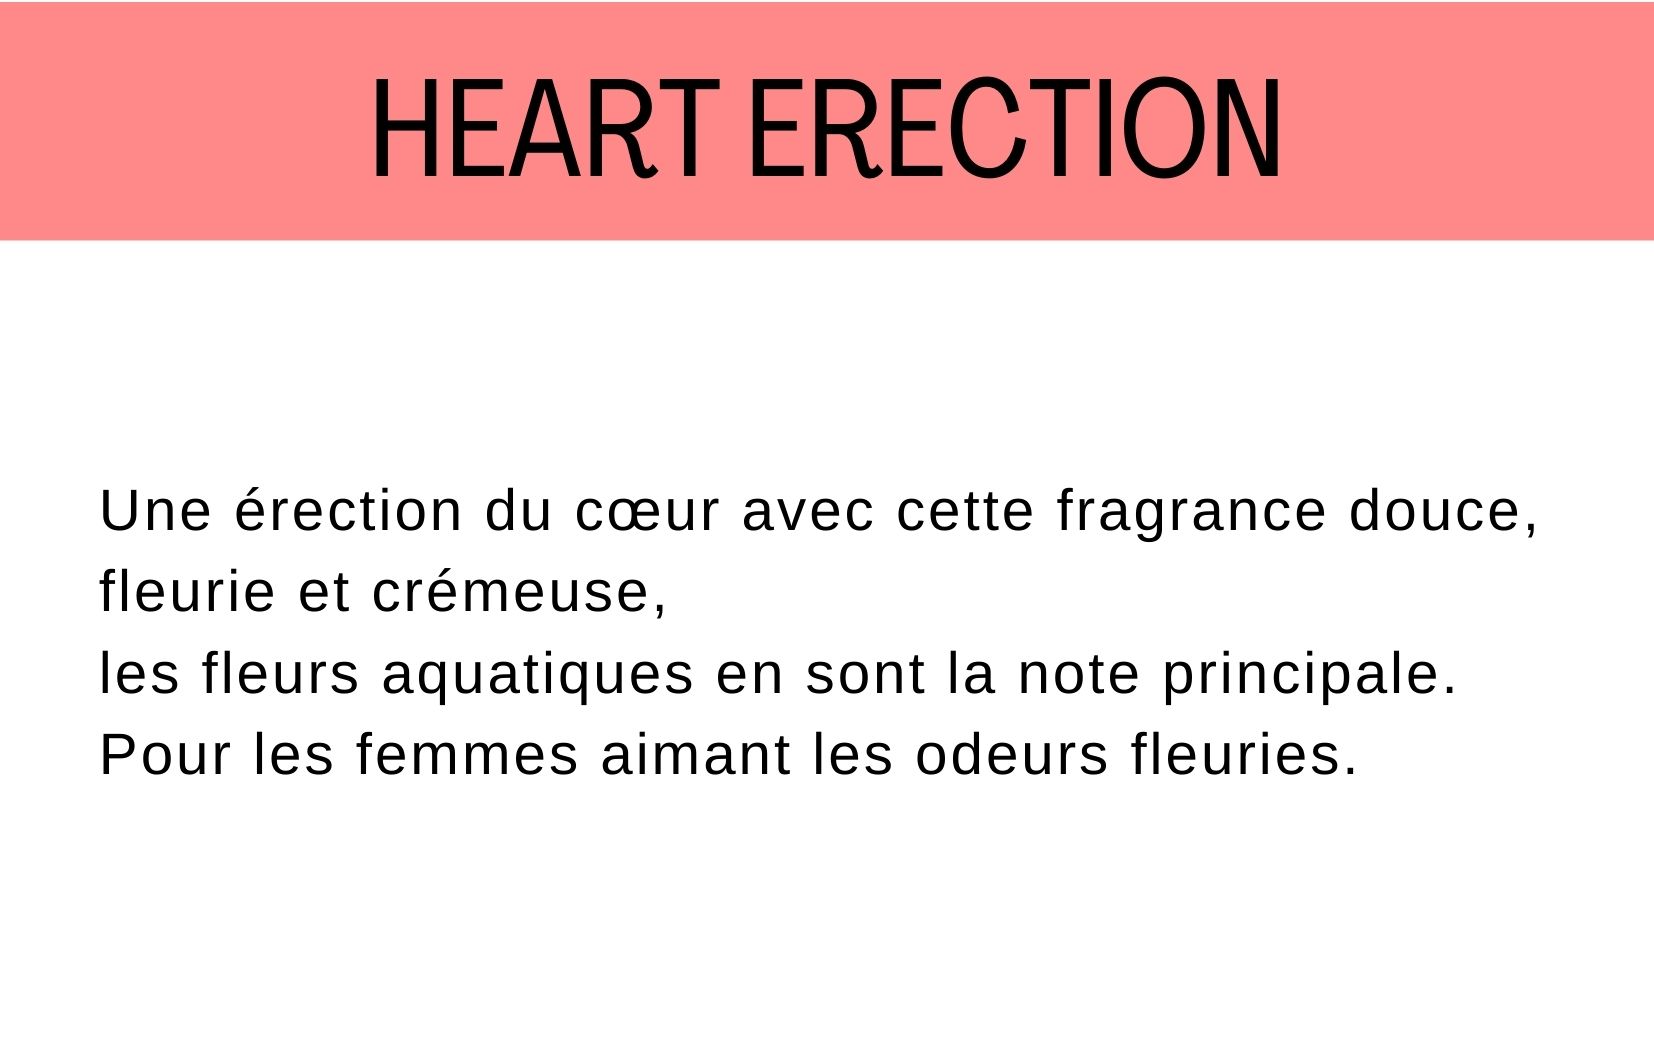 heart erection fragrance description